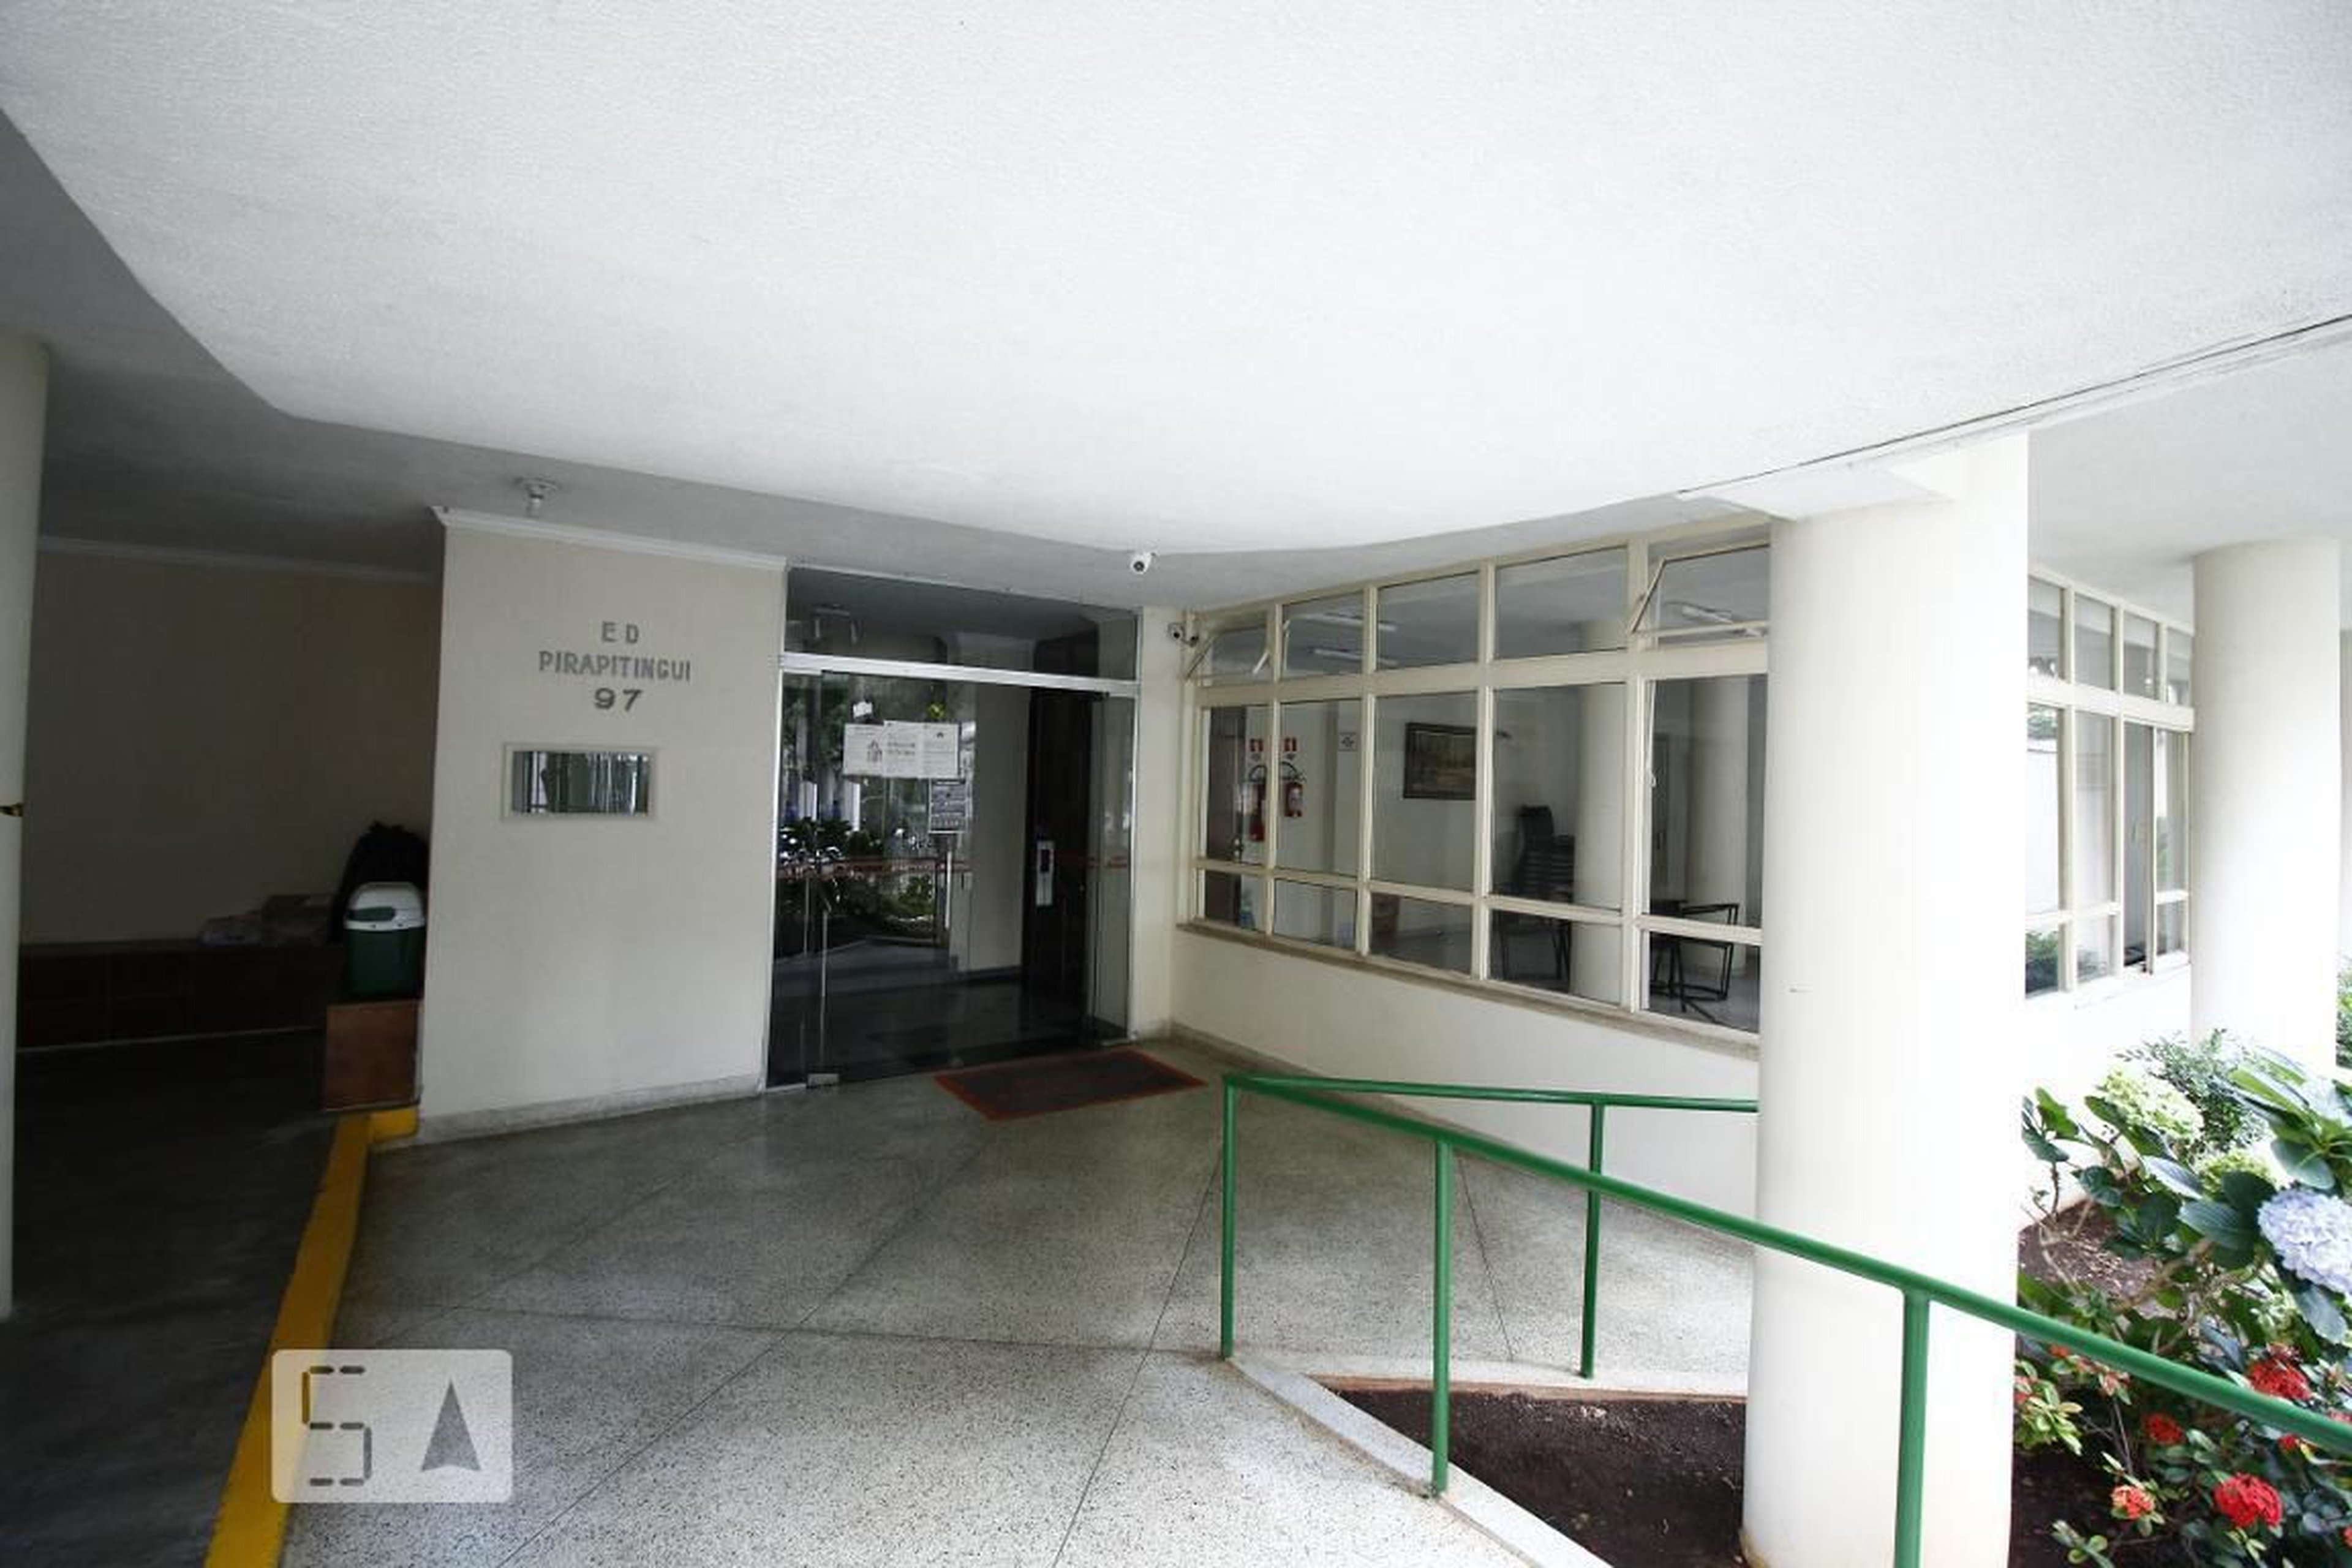 Entrada - Edifício Pirapitingui